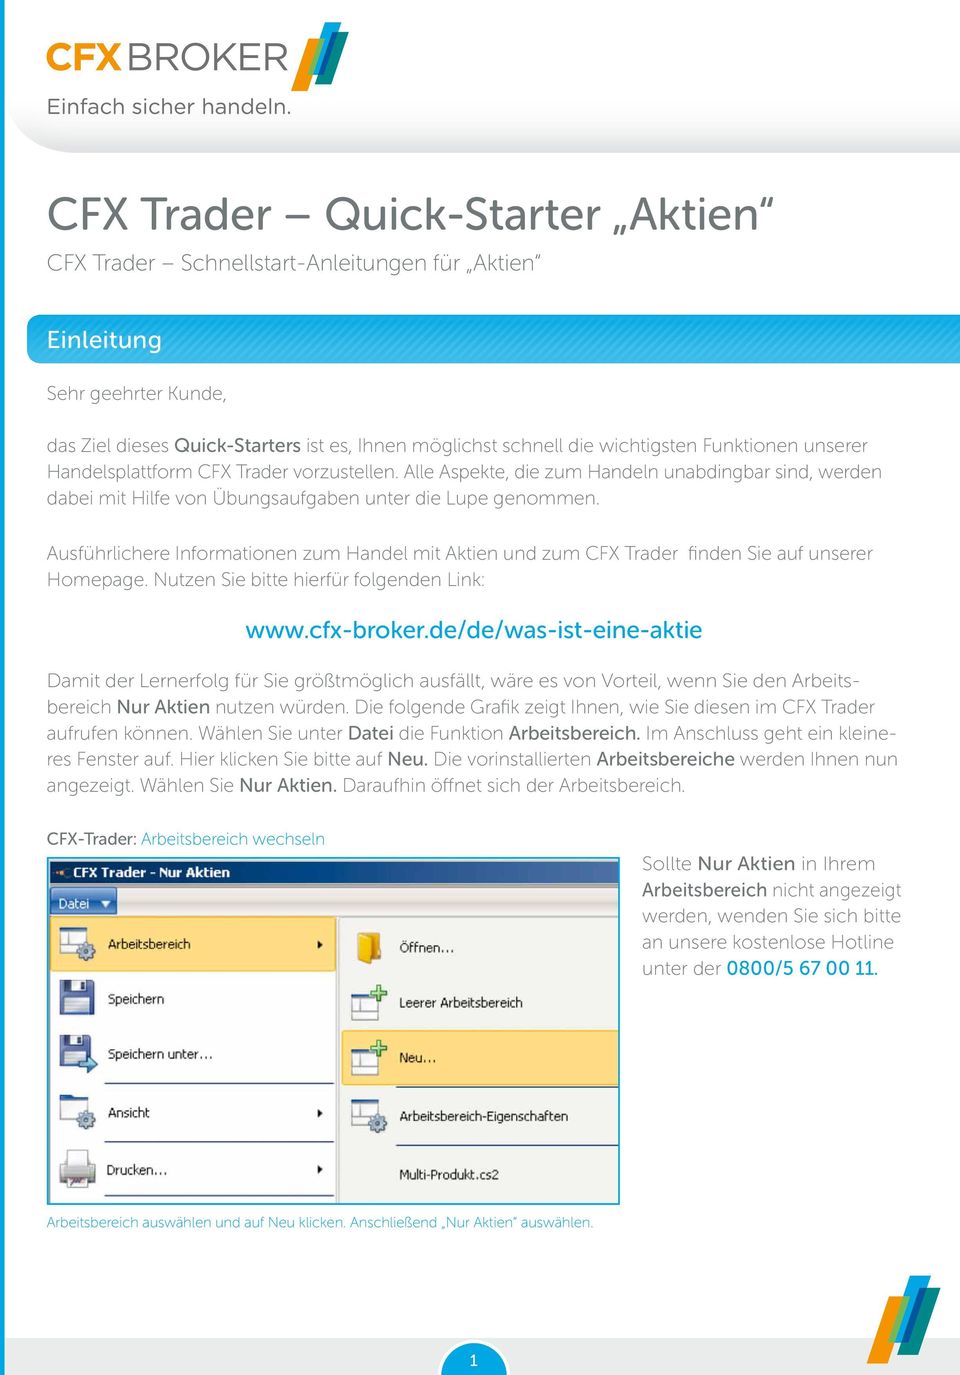 Ausführlichere Informationen zum Handel mit Aktien und zum CFX Trader finden Sie auf unserer Homepage. Nutzen Sie bitte hierfür folgenden Link: www.cfx-broker.